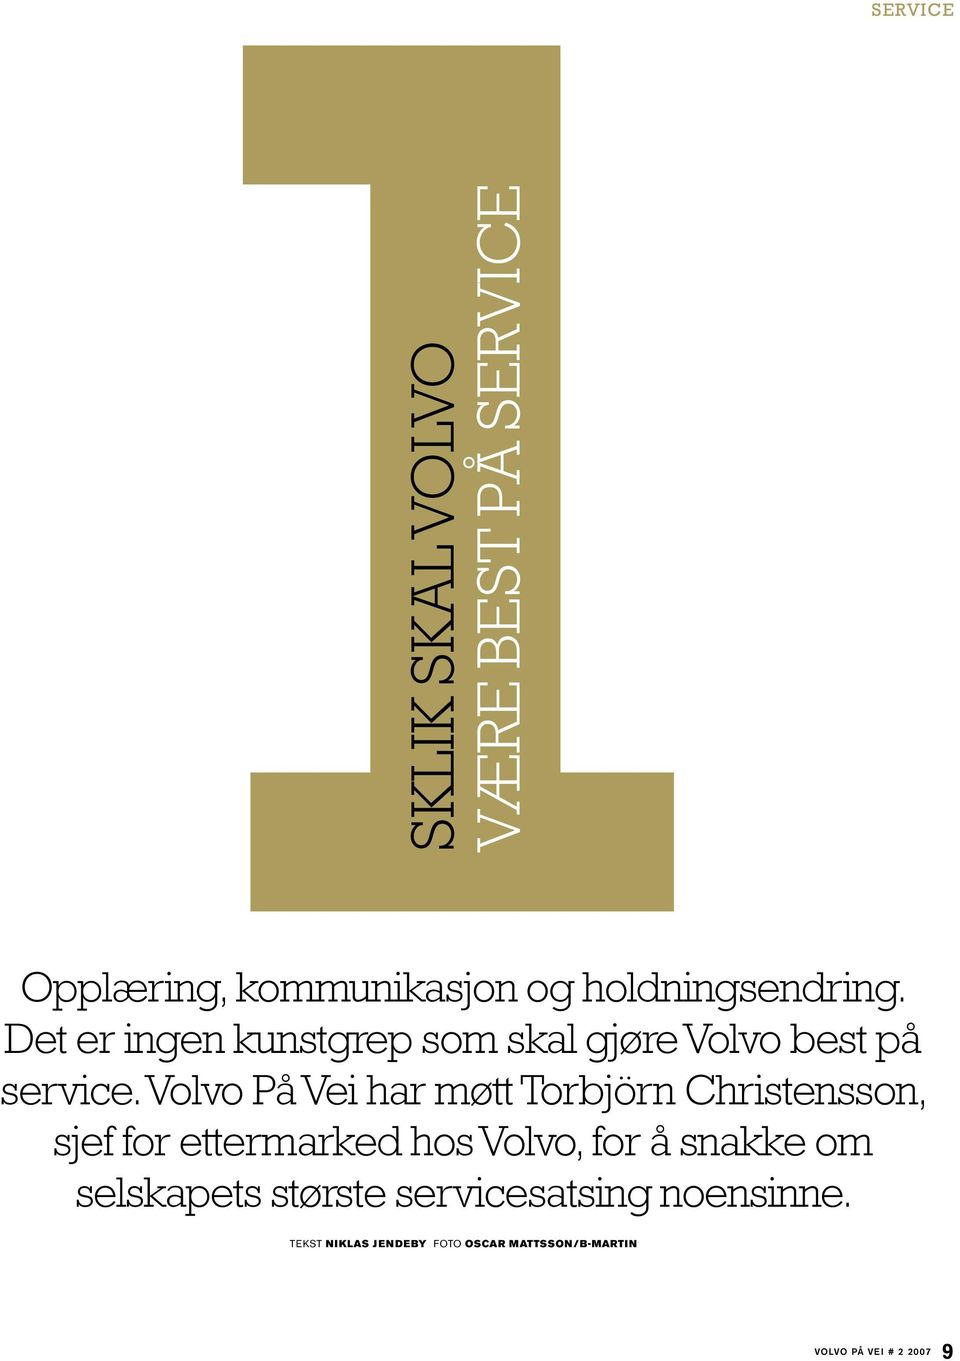 Volvo På Vei har møtt Torbjörn Christensson, sjef for ettermarked hos Volvo, for å